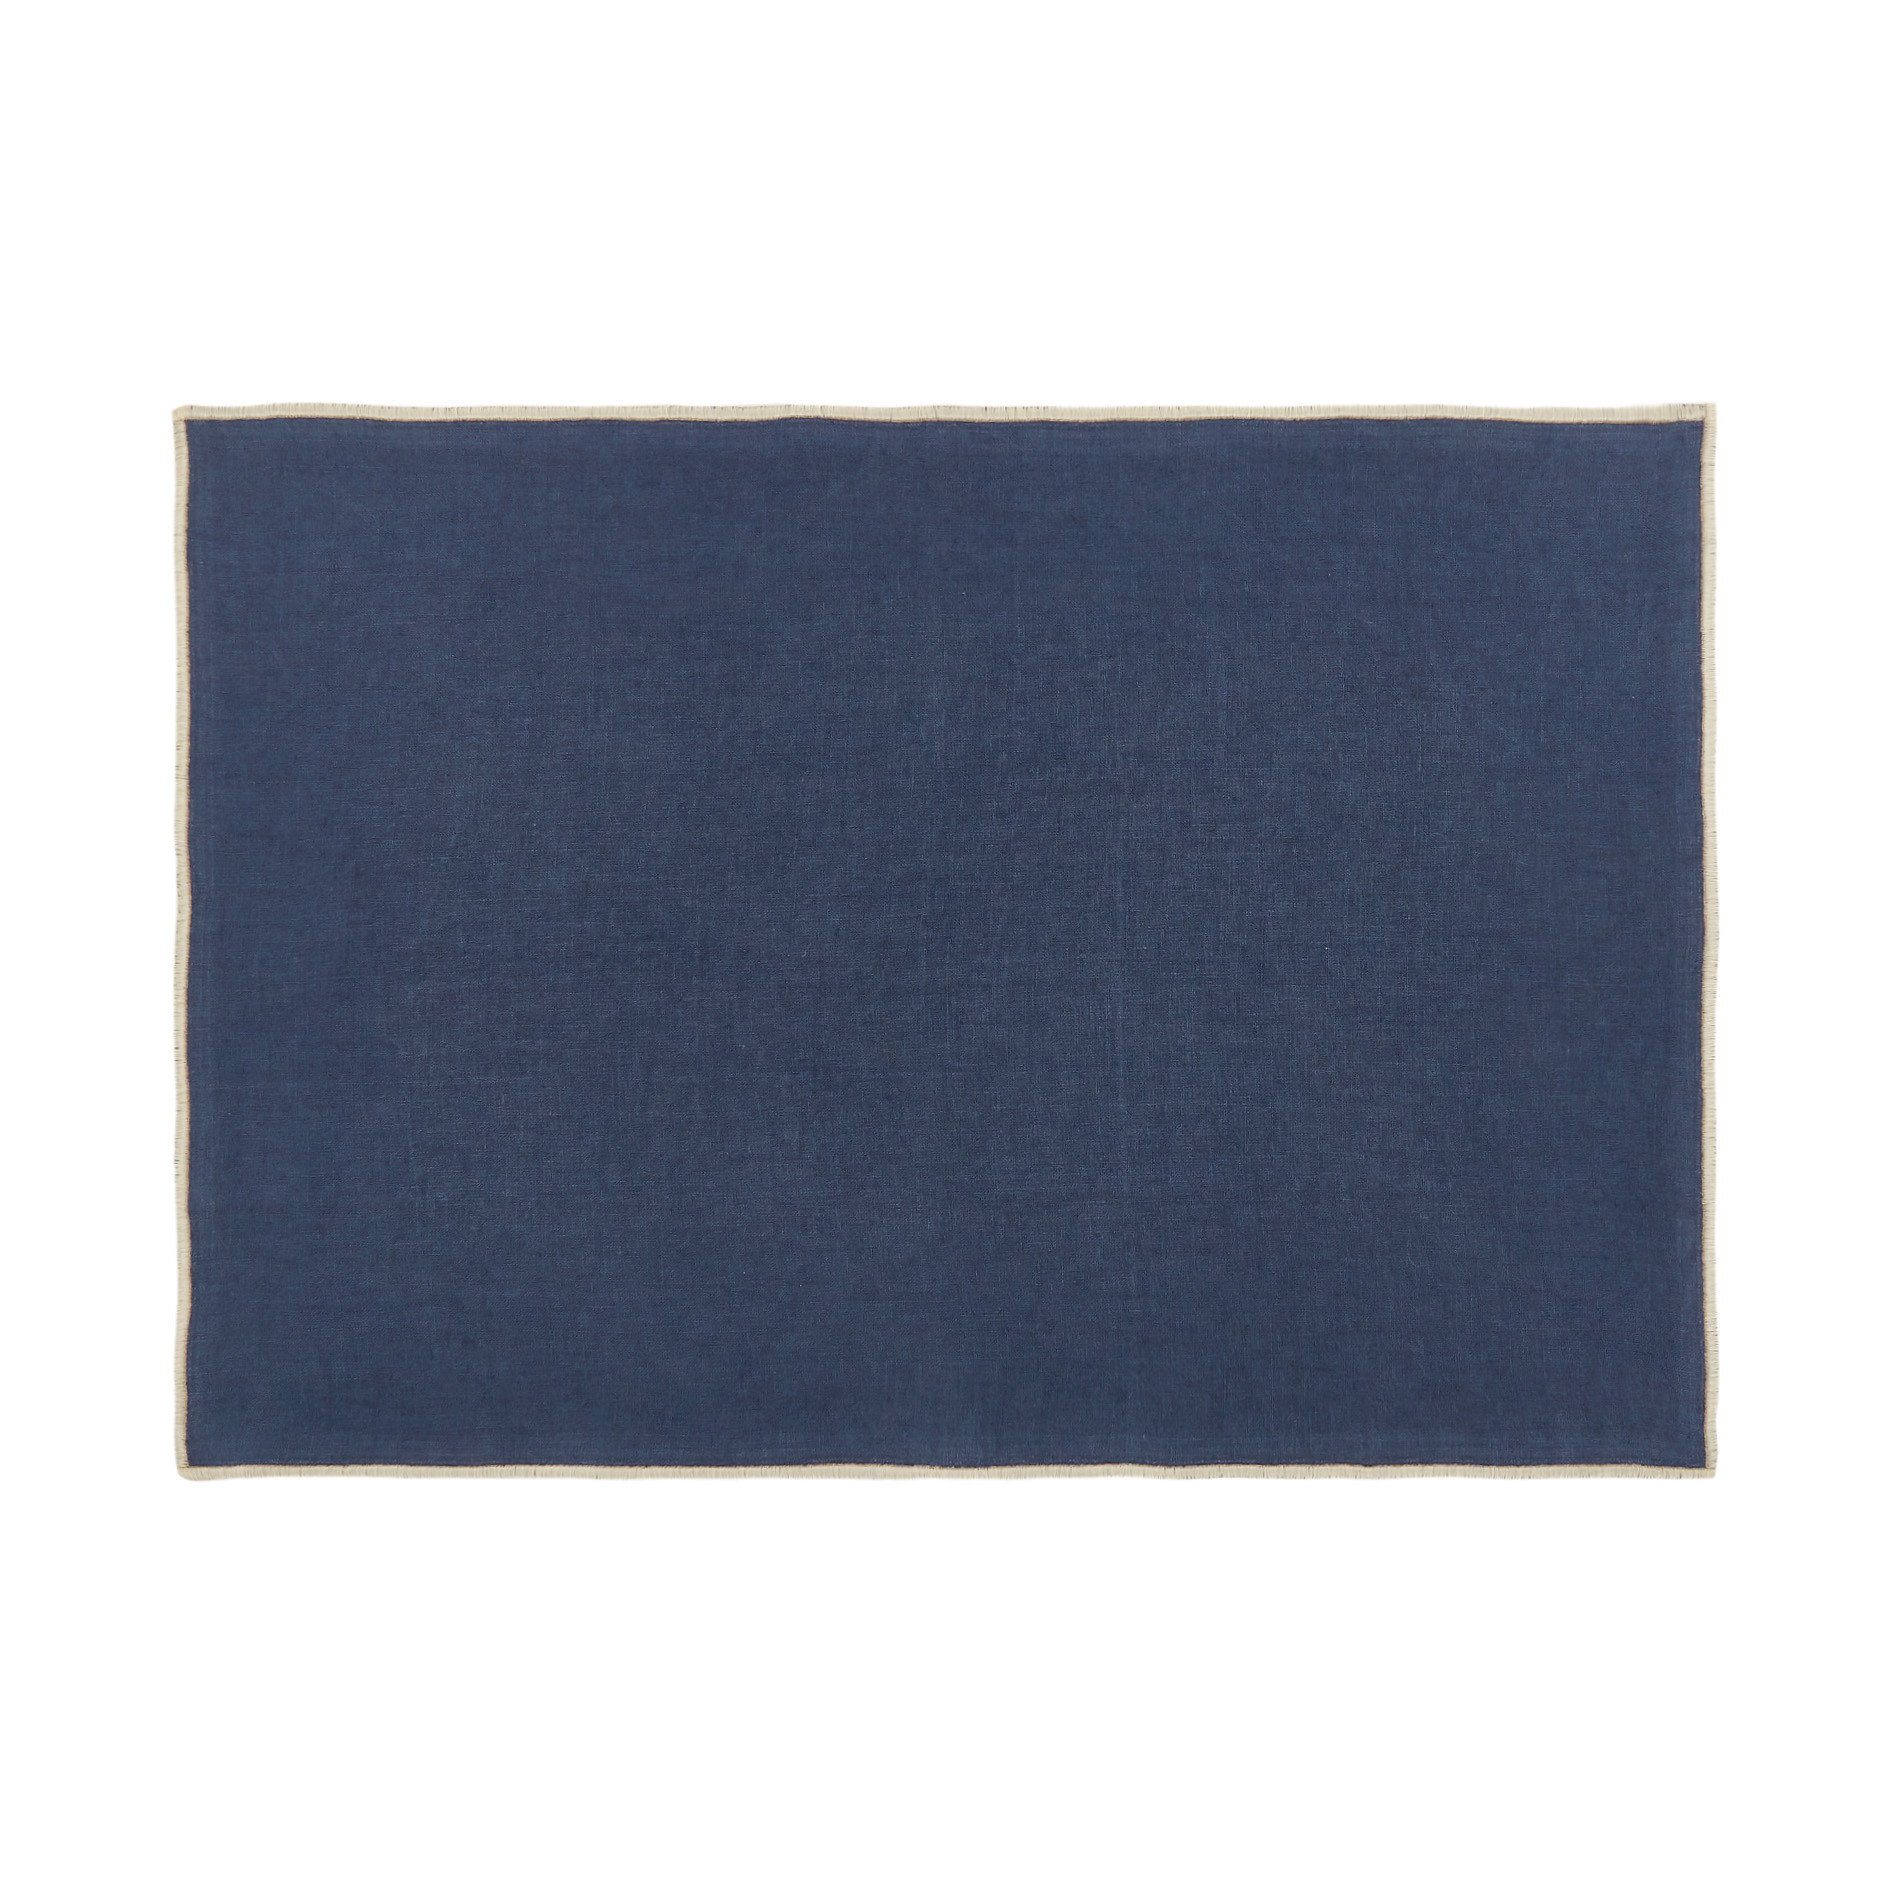 Davide Oldani for Coincasa pure linen placemat, Blue, large image number 0